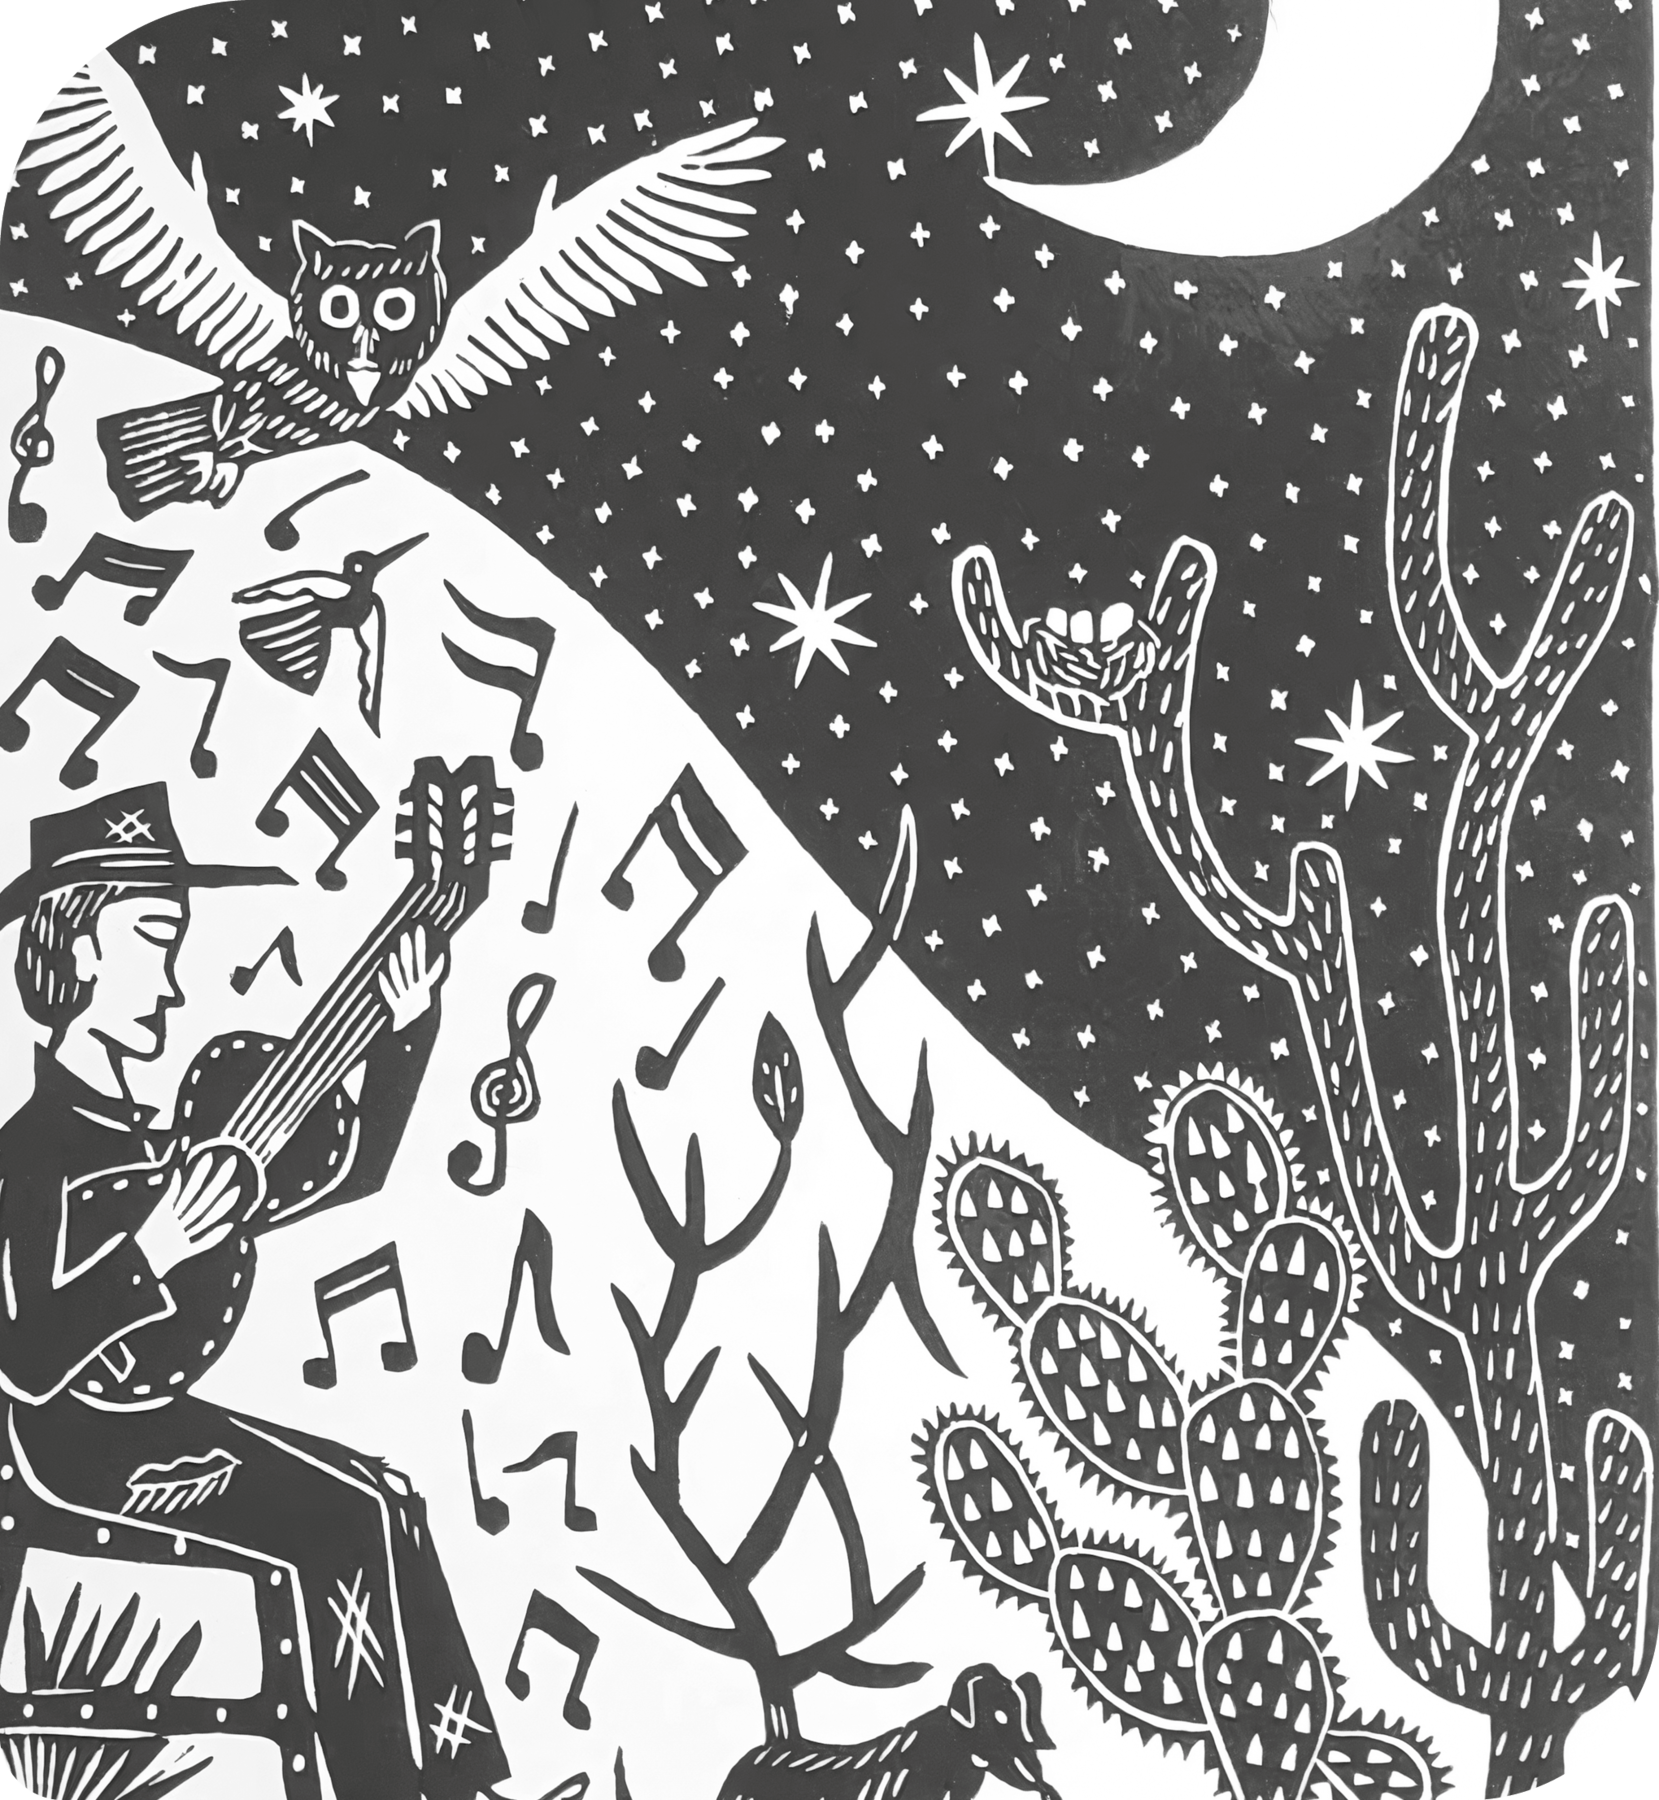 Xilogravura. À esquerda, um homem sentado em um banco, tocando violão, ao redor dele há notas musicais e pássaros. À direita, um grande cacto e céu com estrelas e a lua. Em frente ao homem há um cachorro.